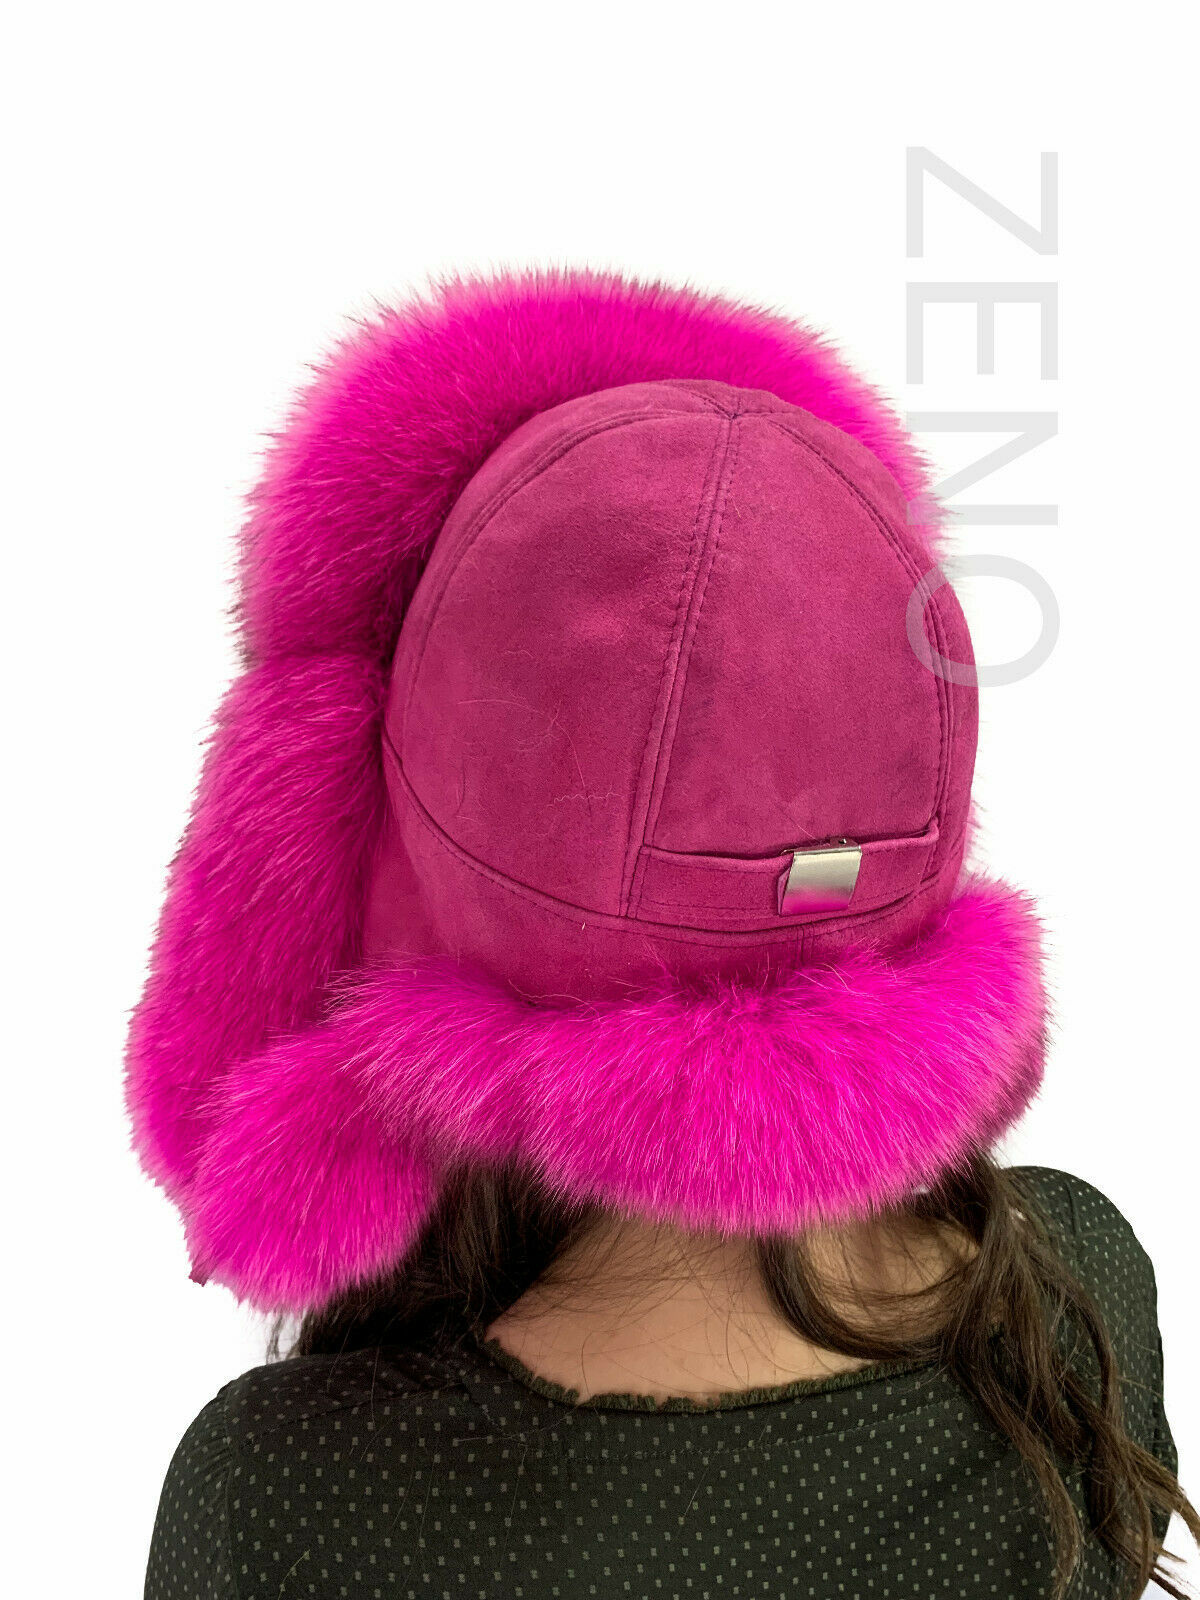 Accessories Hats & Caps Winter Hats Trapper Hats Arctic Fox Fur Full Hat Saga Furs Pink Color All Fur Hat 